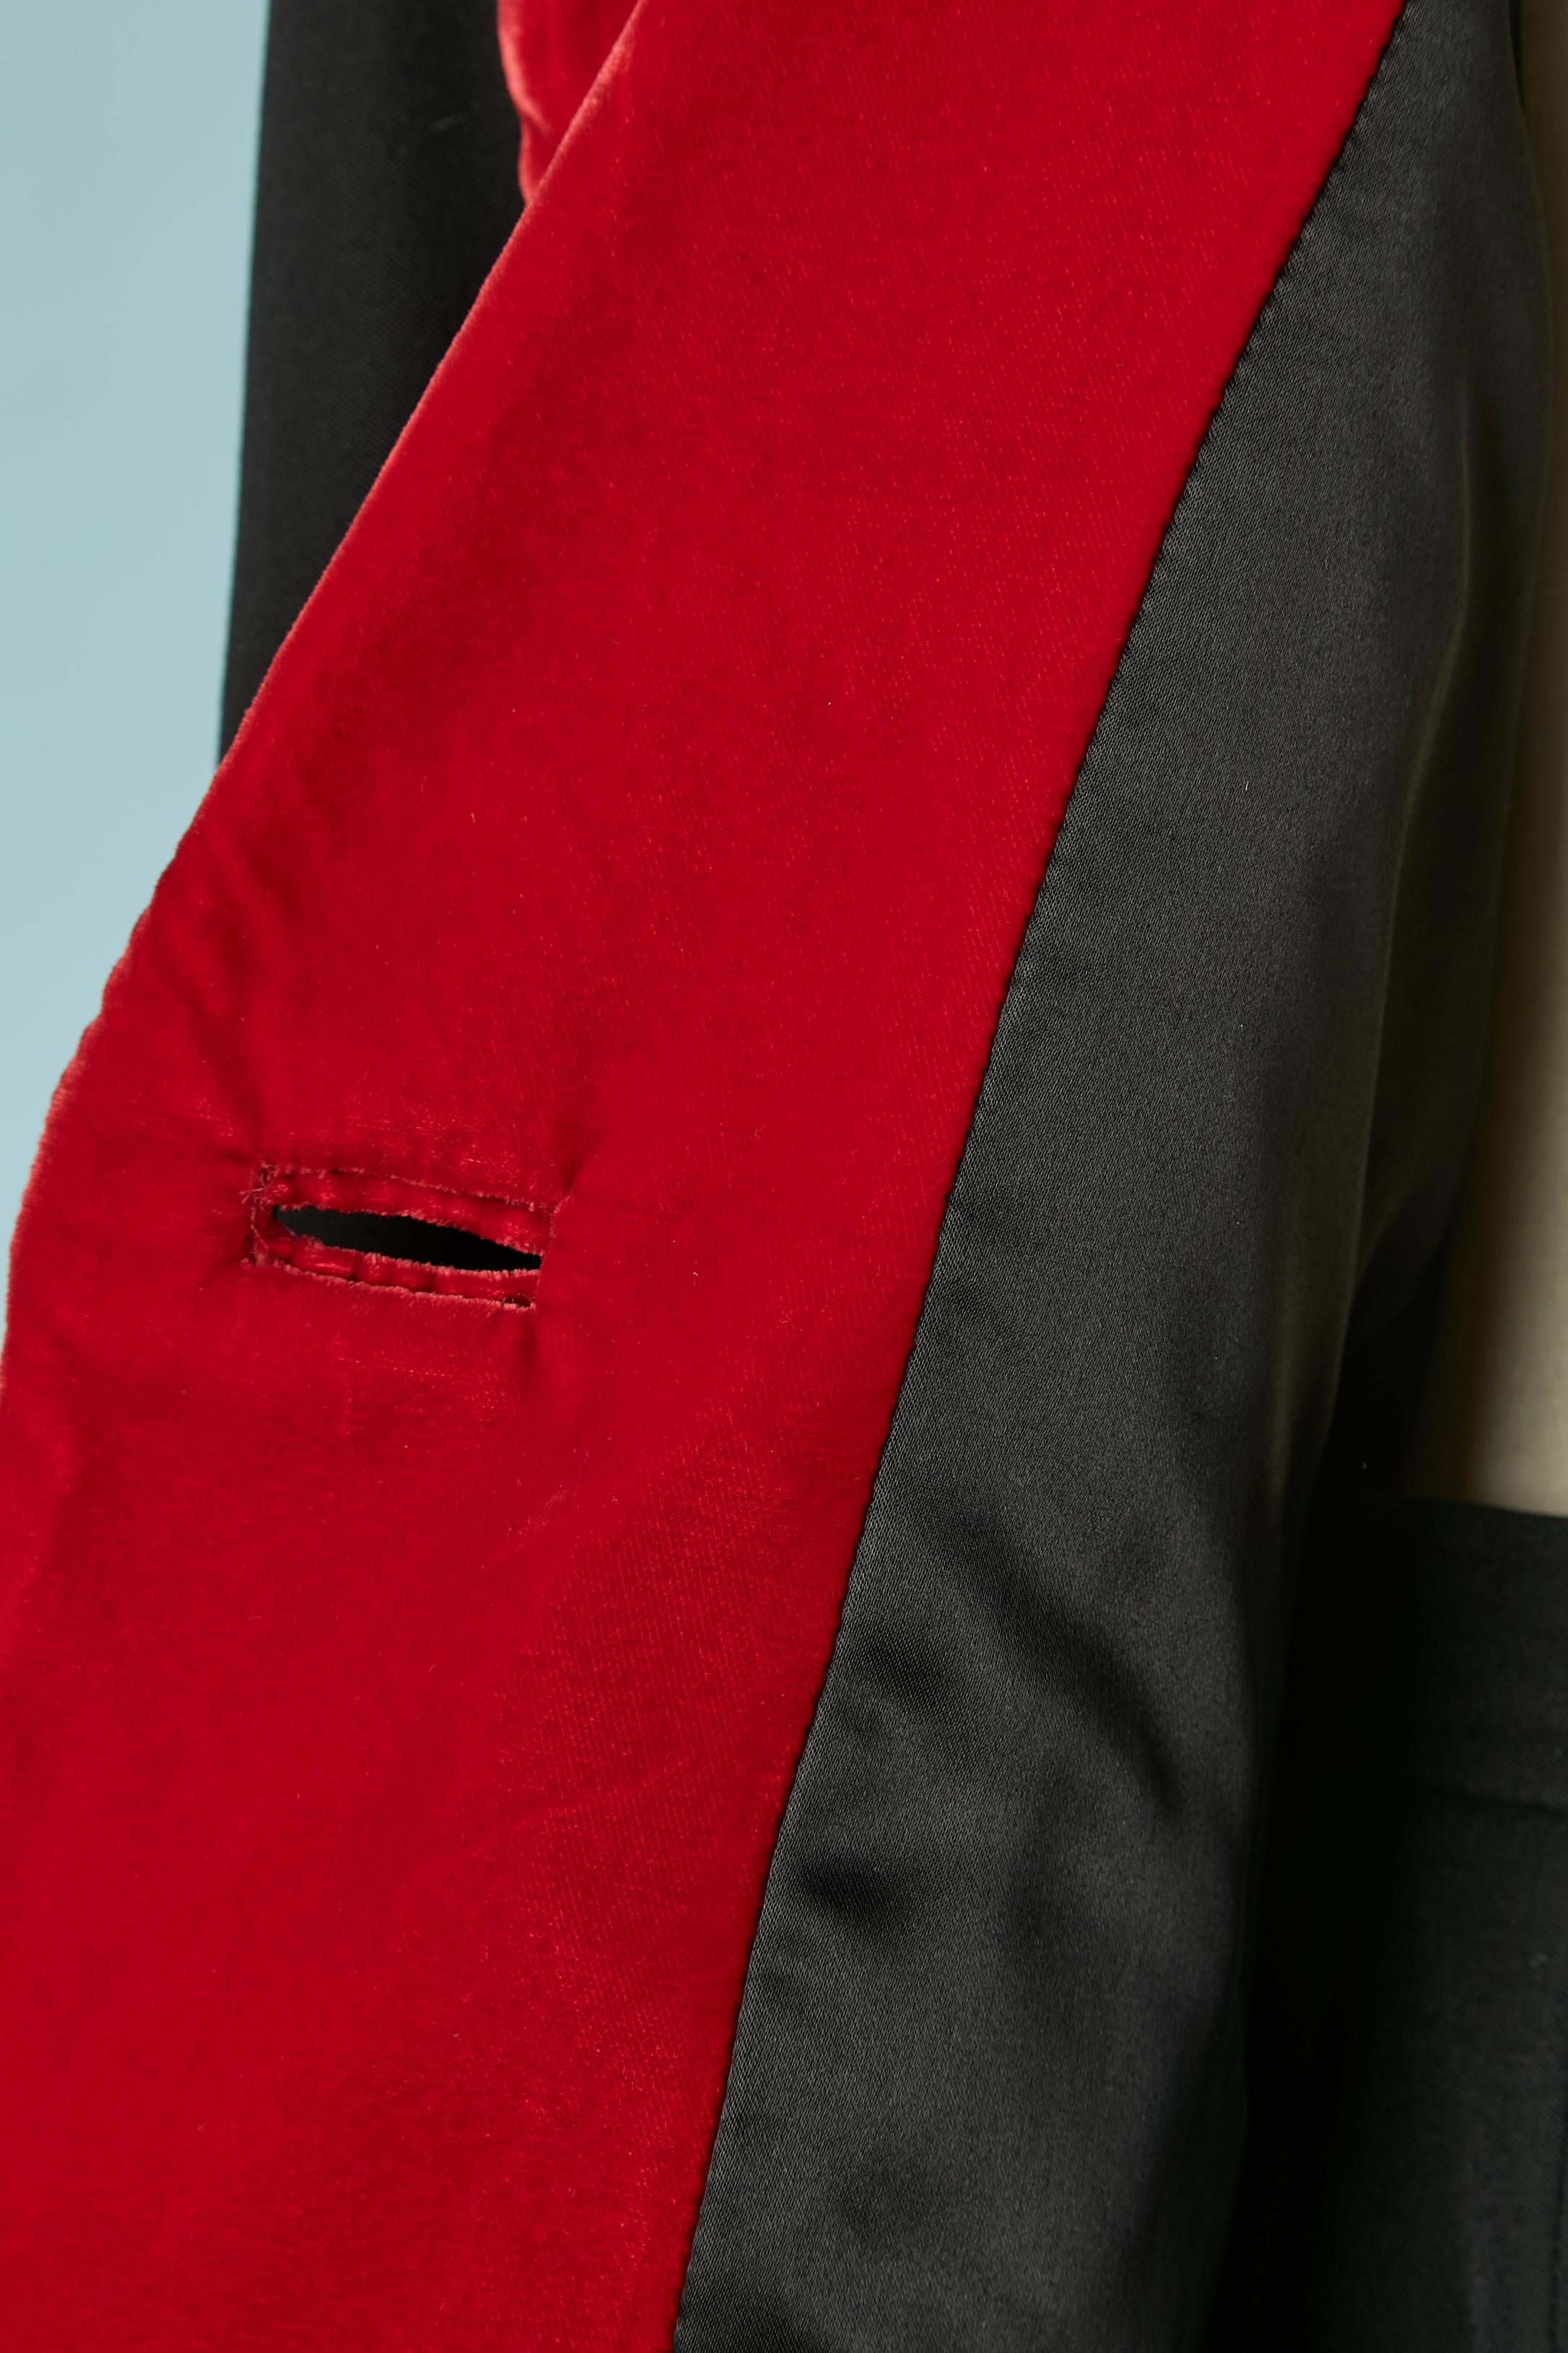 Black skirt-suit with red velvet details Yves Saint Laurent Rive Gauche 1980's  For Sale 1